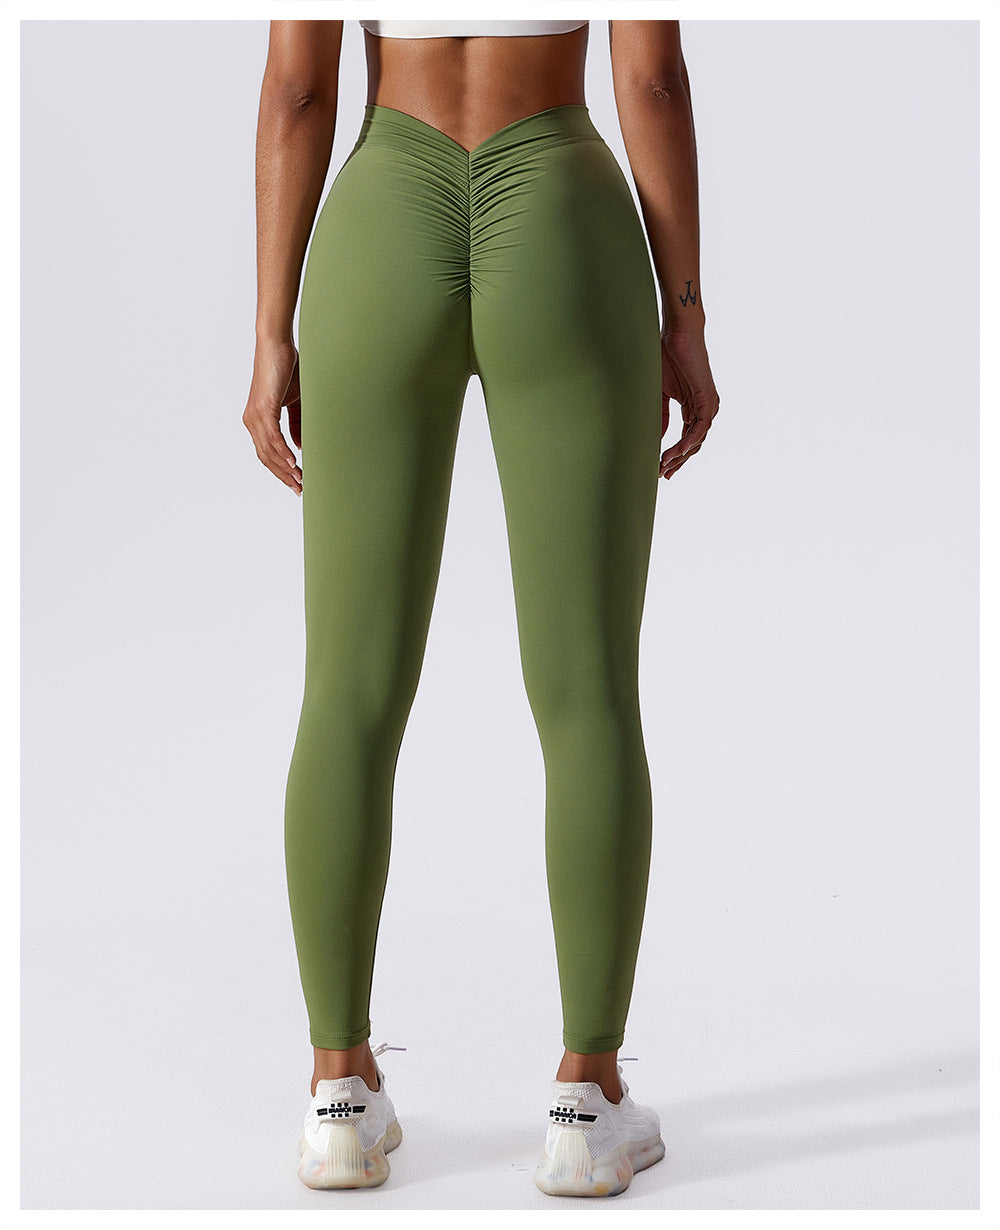 Wholesale Scrunch Butt Leggings No Camel Toe V Back Yoga Pants